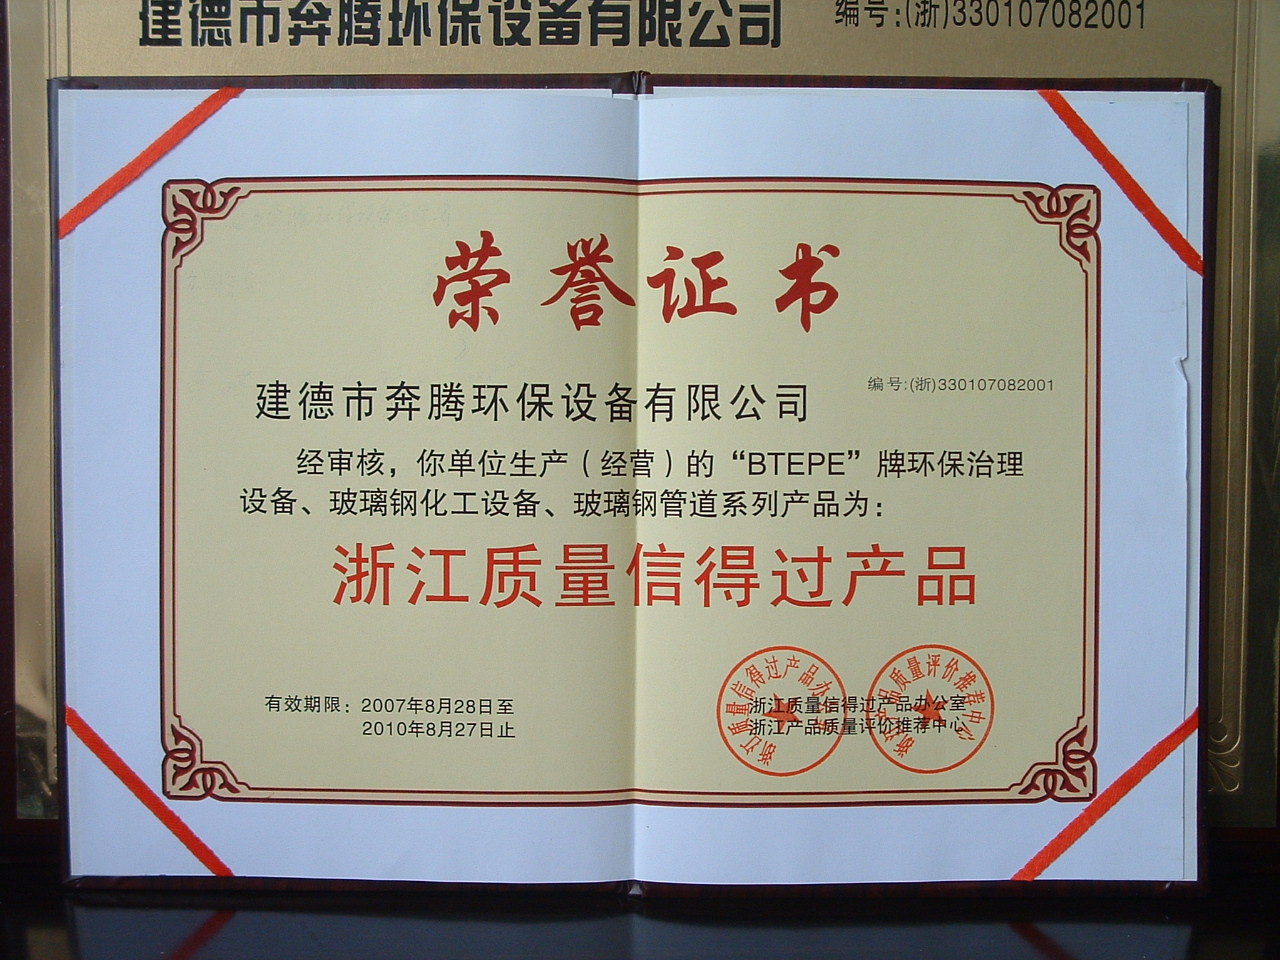 Zhejiang quality product certificate